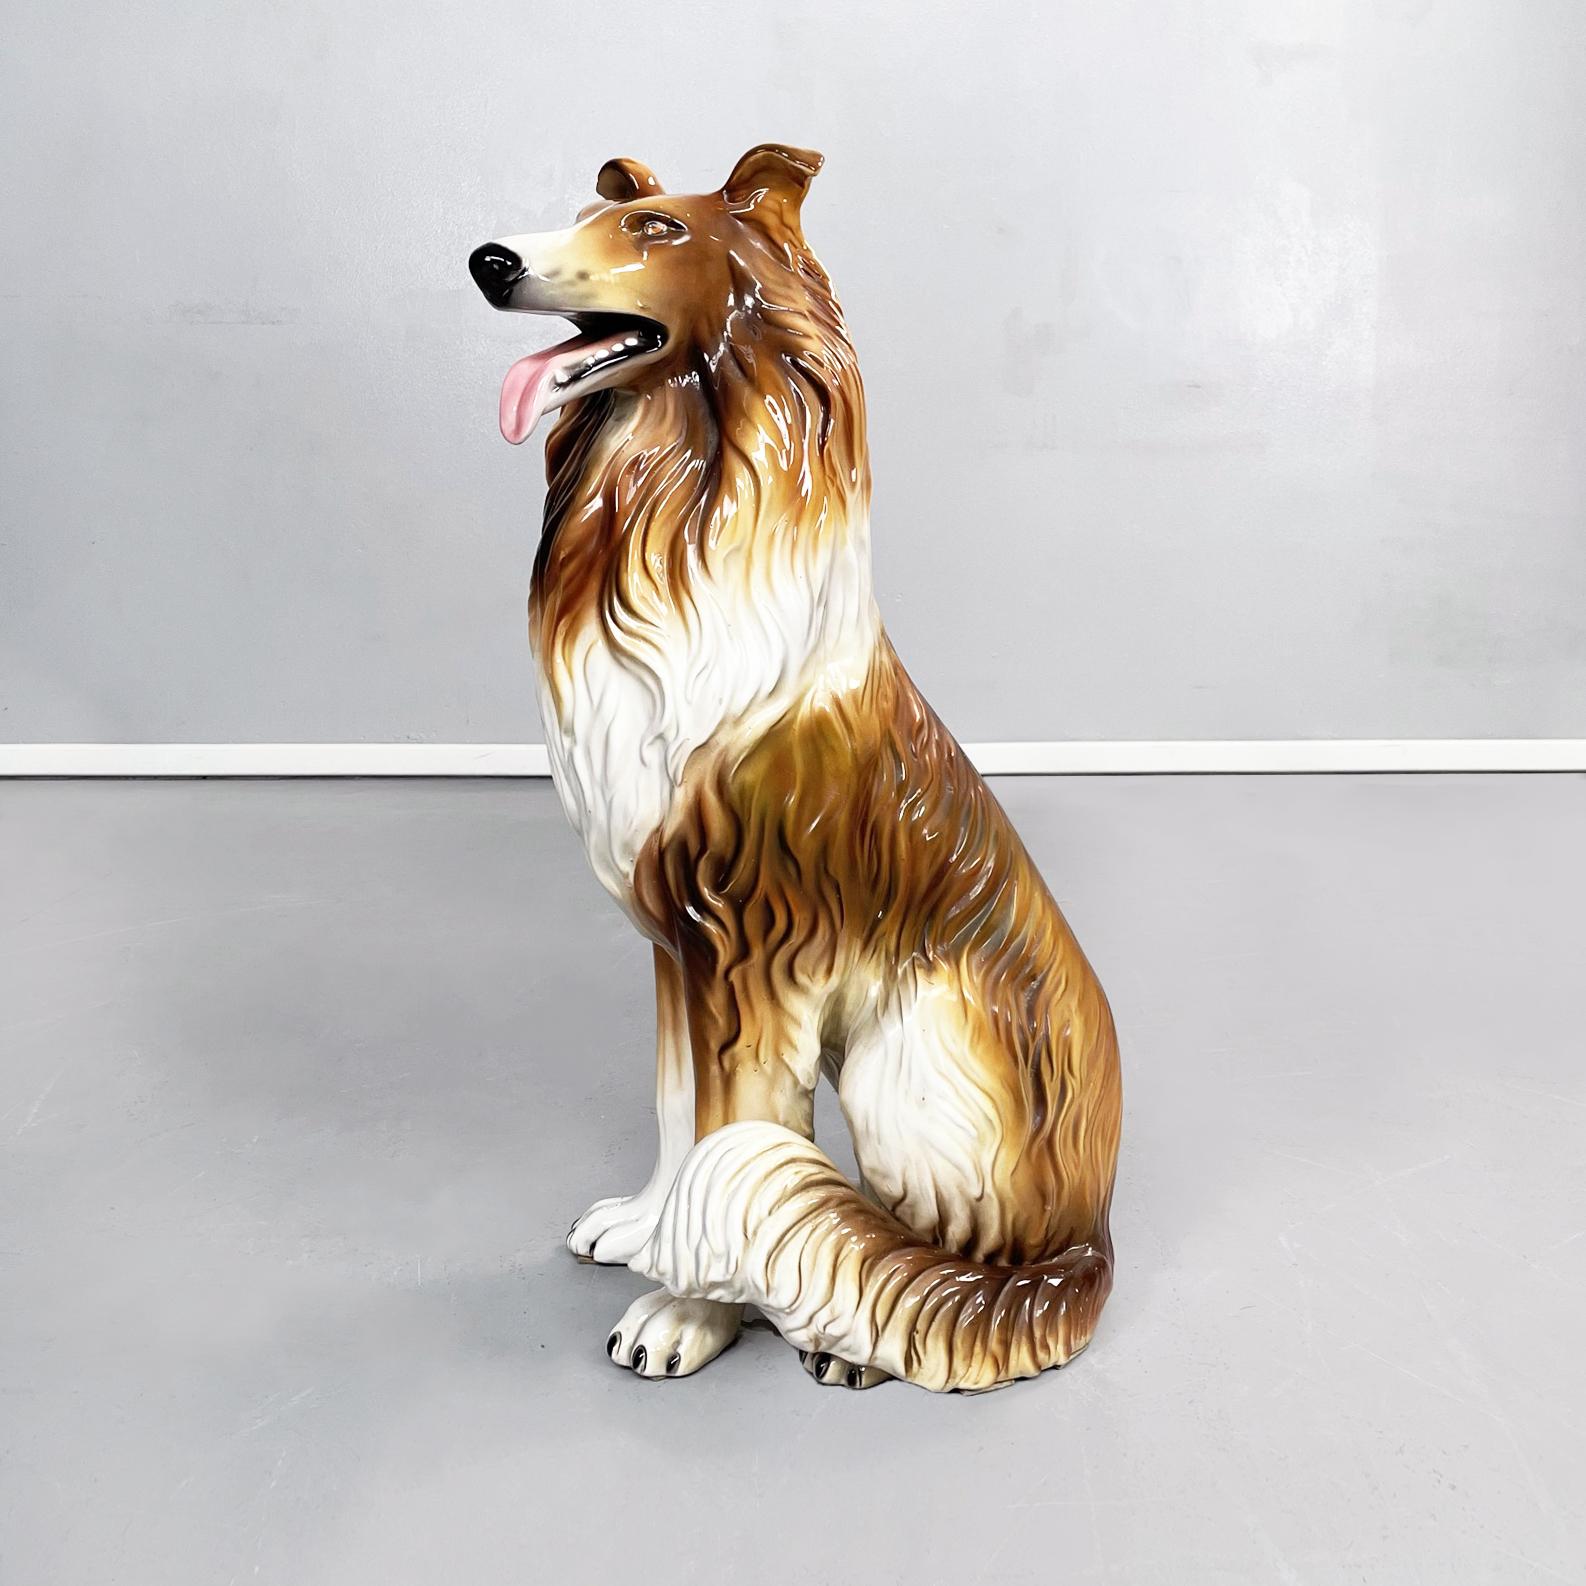 Italien moderne Sculpture d'un chien de race Collie assis en céramique, 1970

Sculpture d'un chien collie à poil long assis, en céramique brune, blanche, beige, rose et noire. 
La sculpture est finement travaillée dans tous ses détails.
Produite en